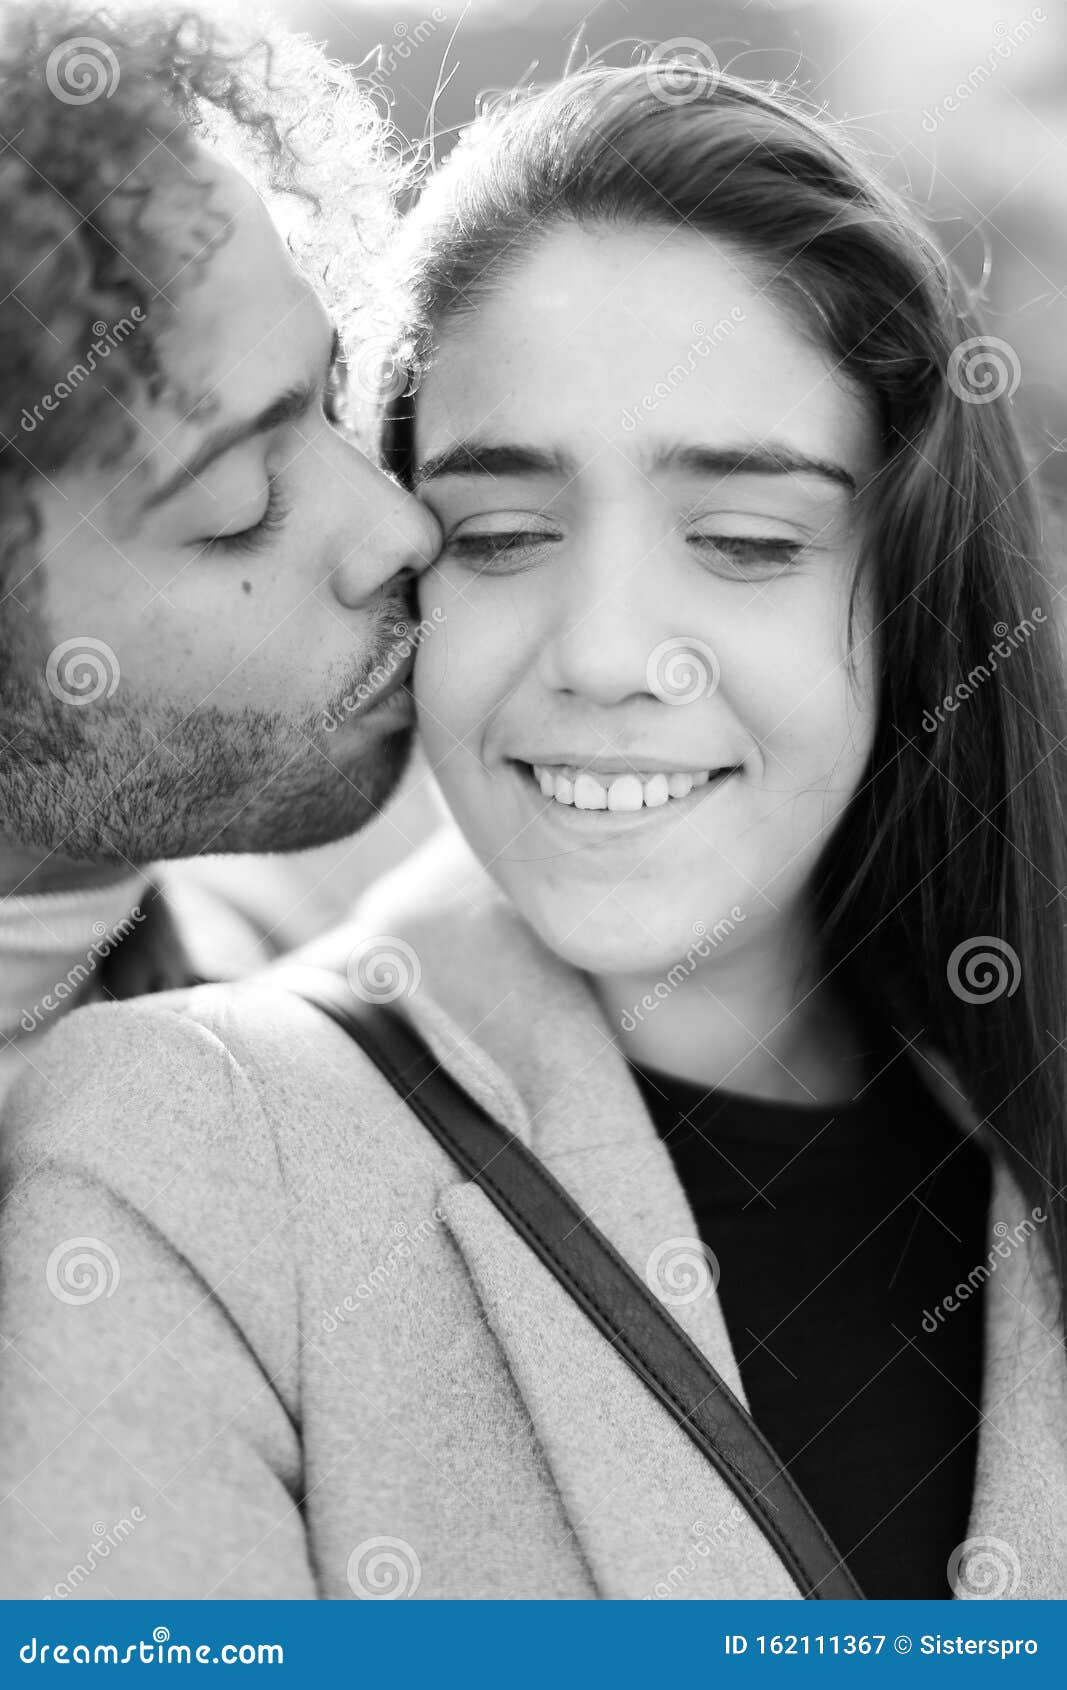 一对情侣拥抱和亲吻的照片 · 免费素材图片